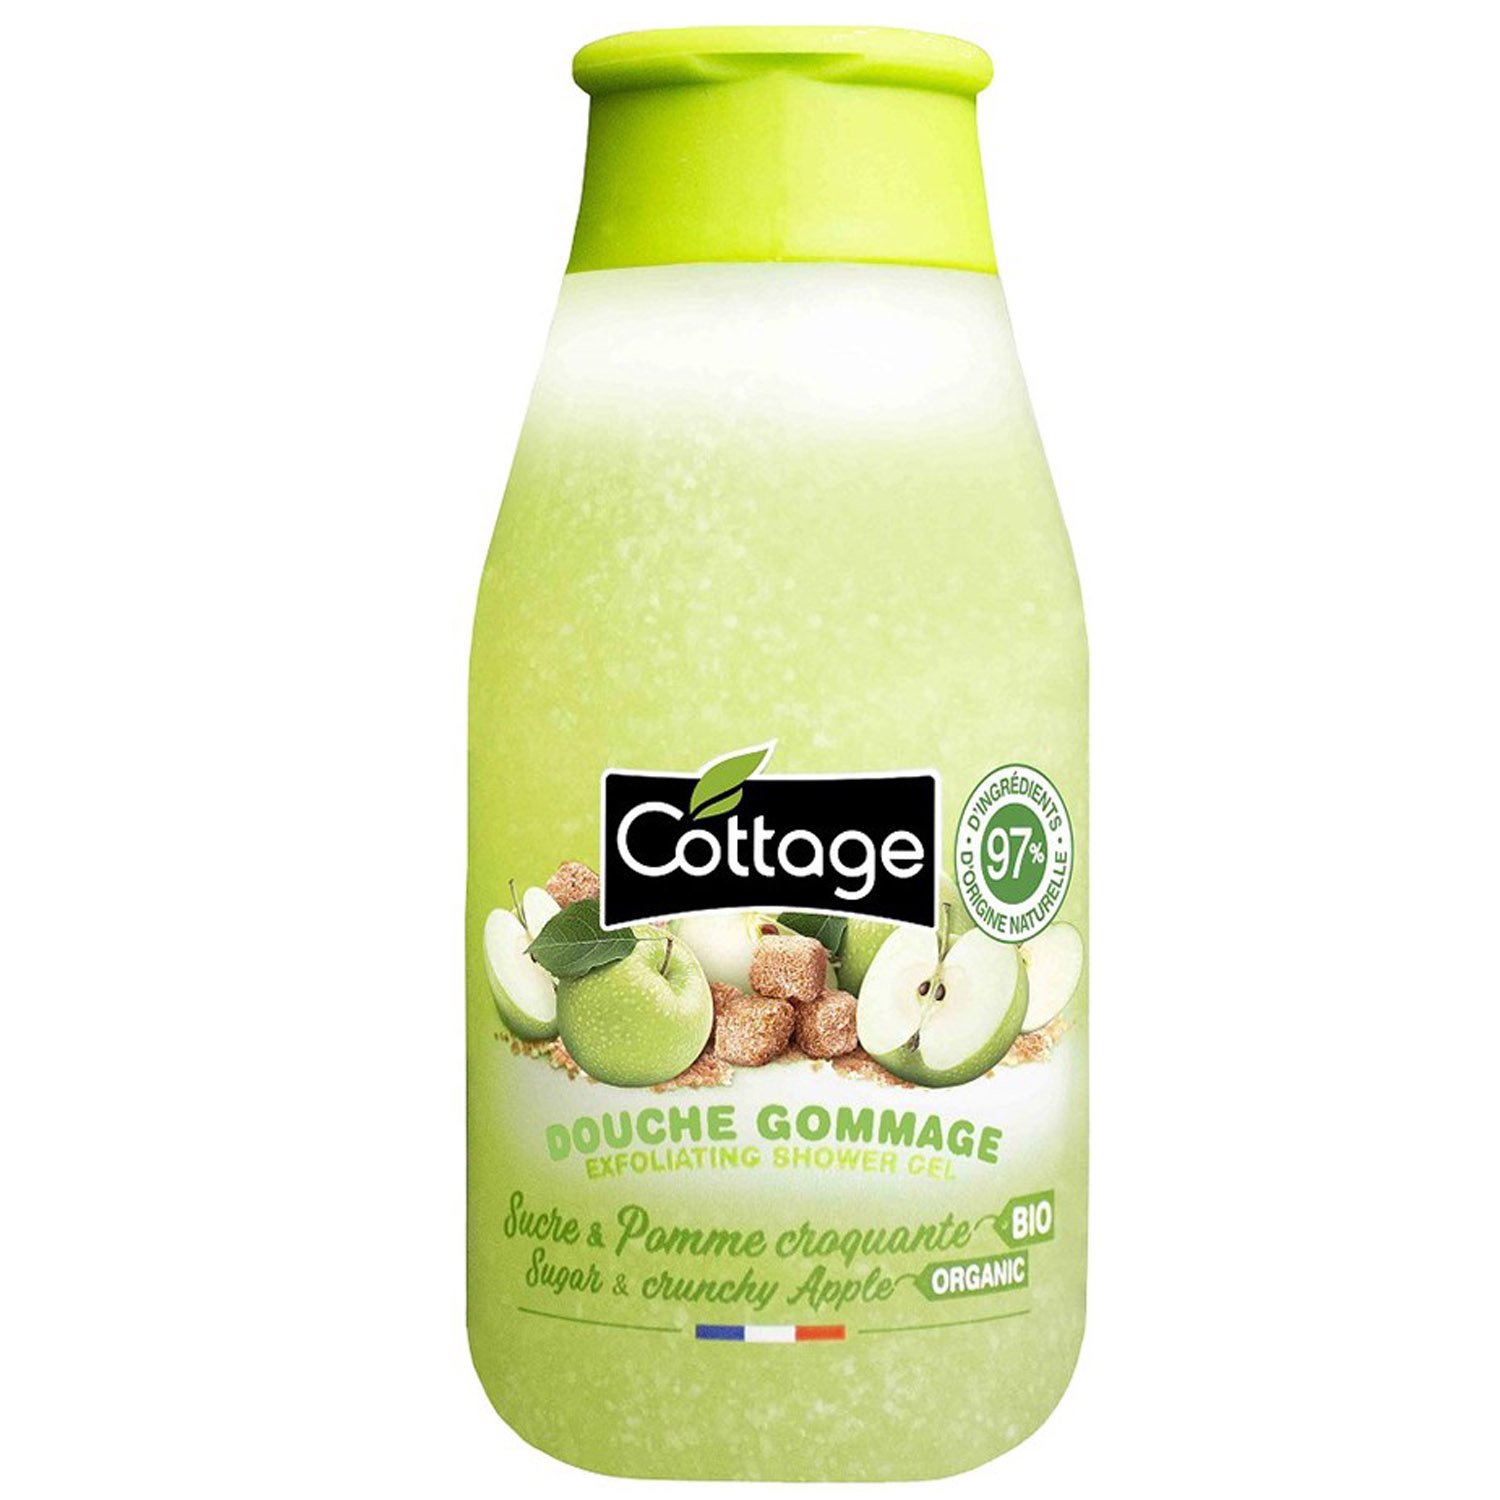 Гель-эксфолиант для душа Cottage Exfoliating Shower Gel Sugar and Crunchy Apple 50 мл - фото 1